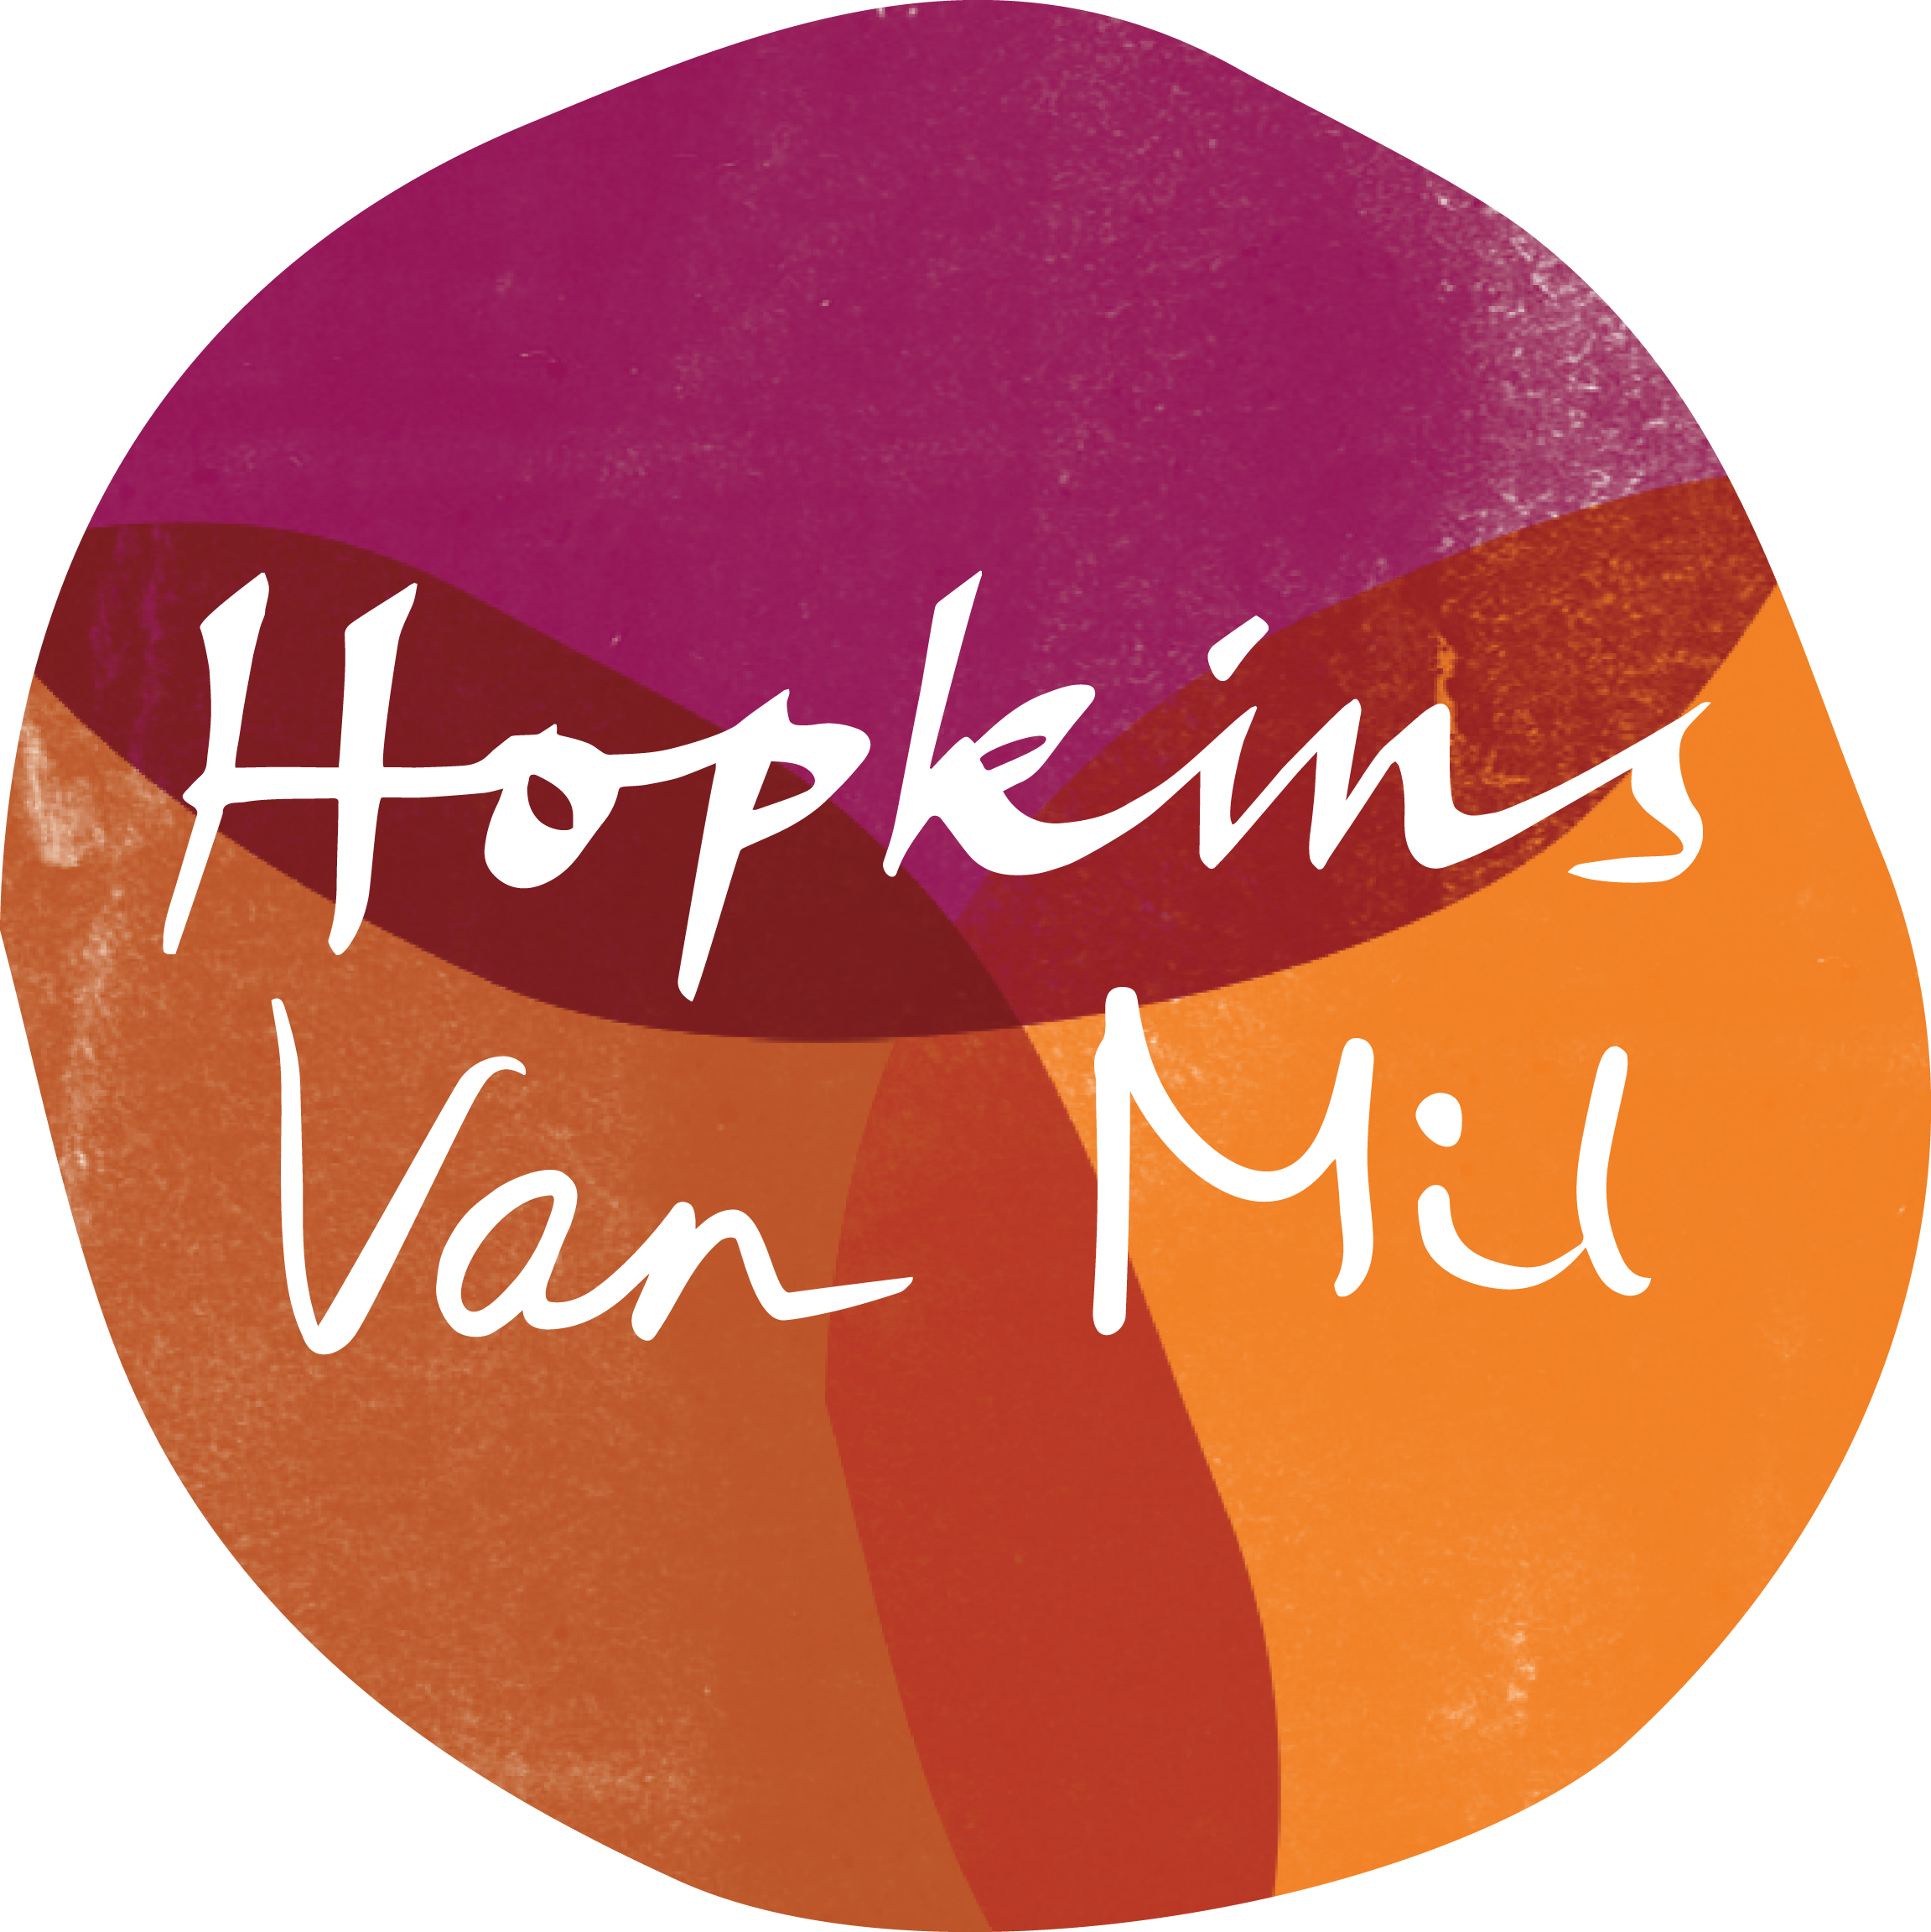 Hopkins Van Mil